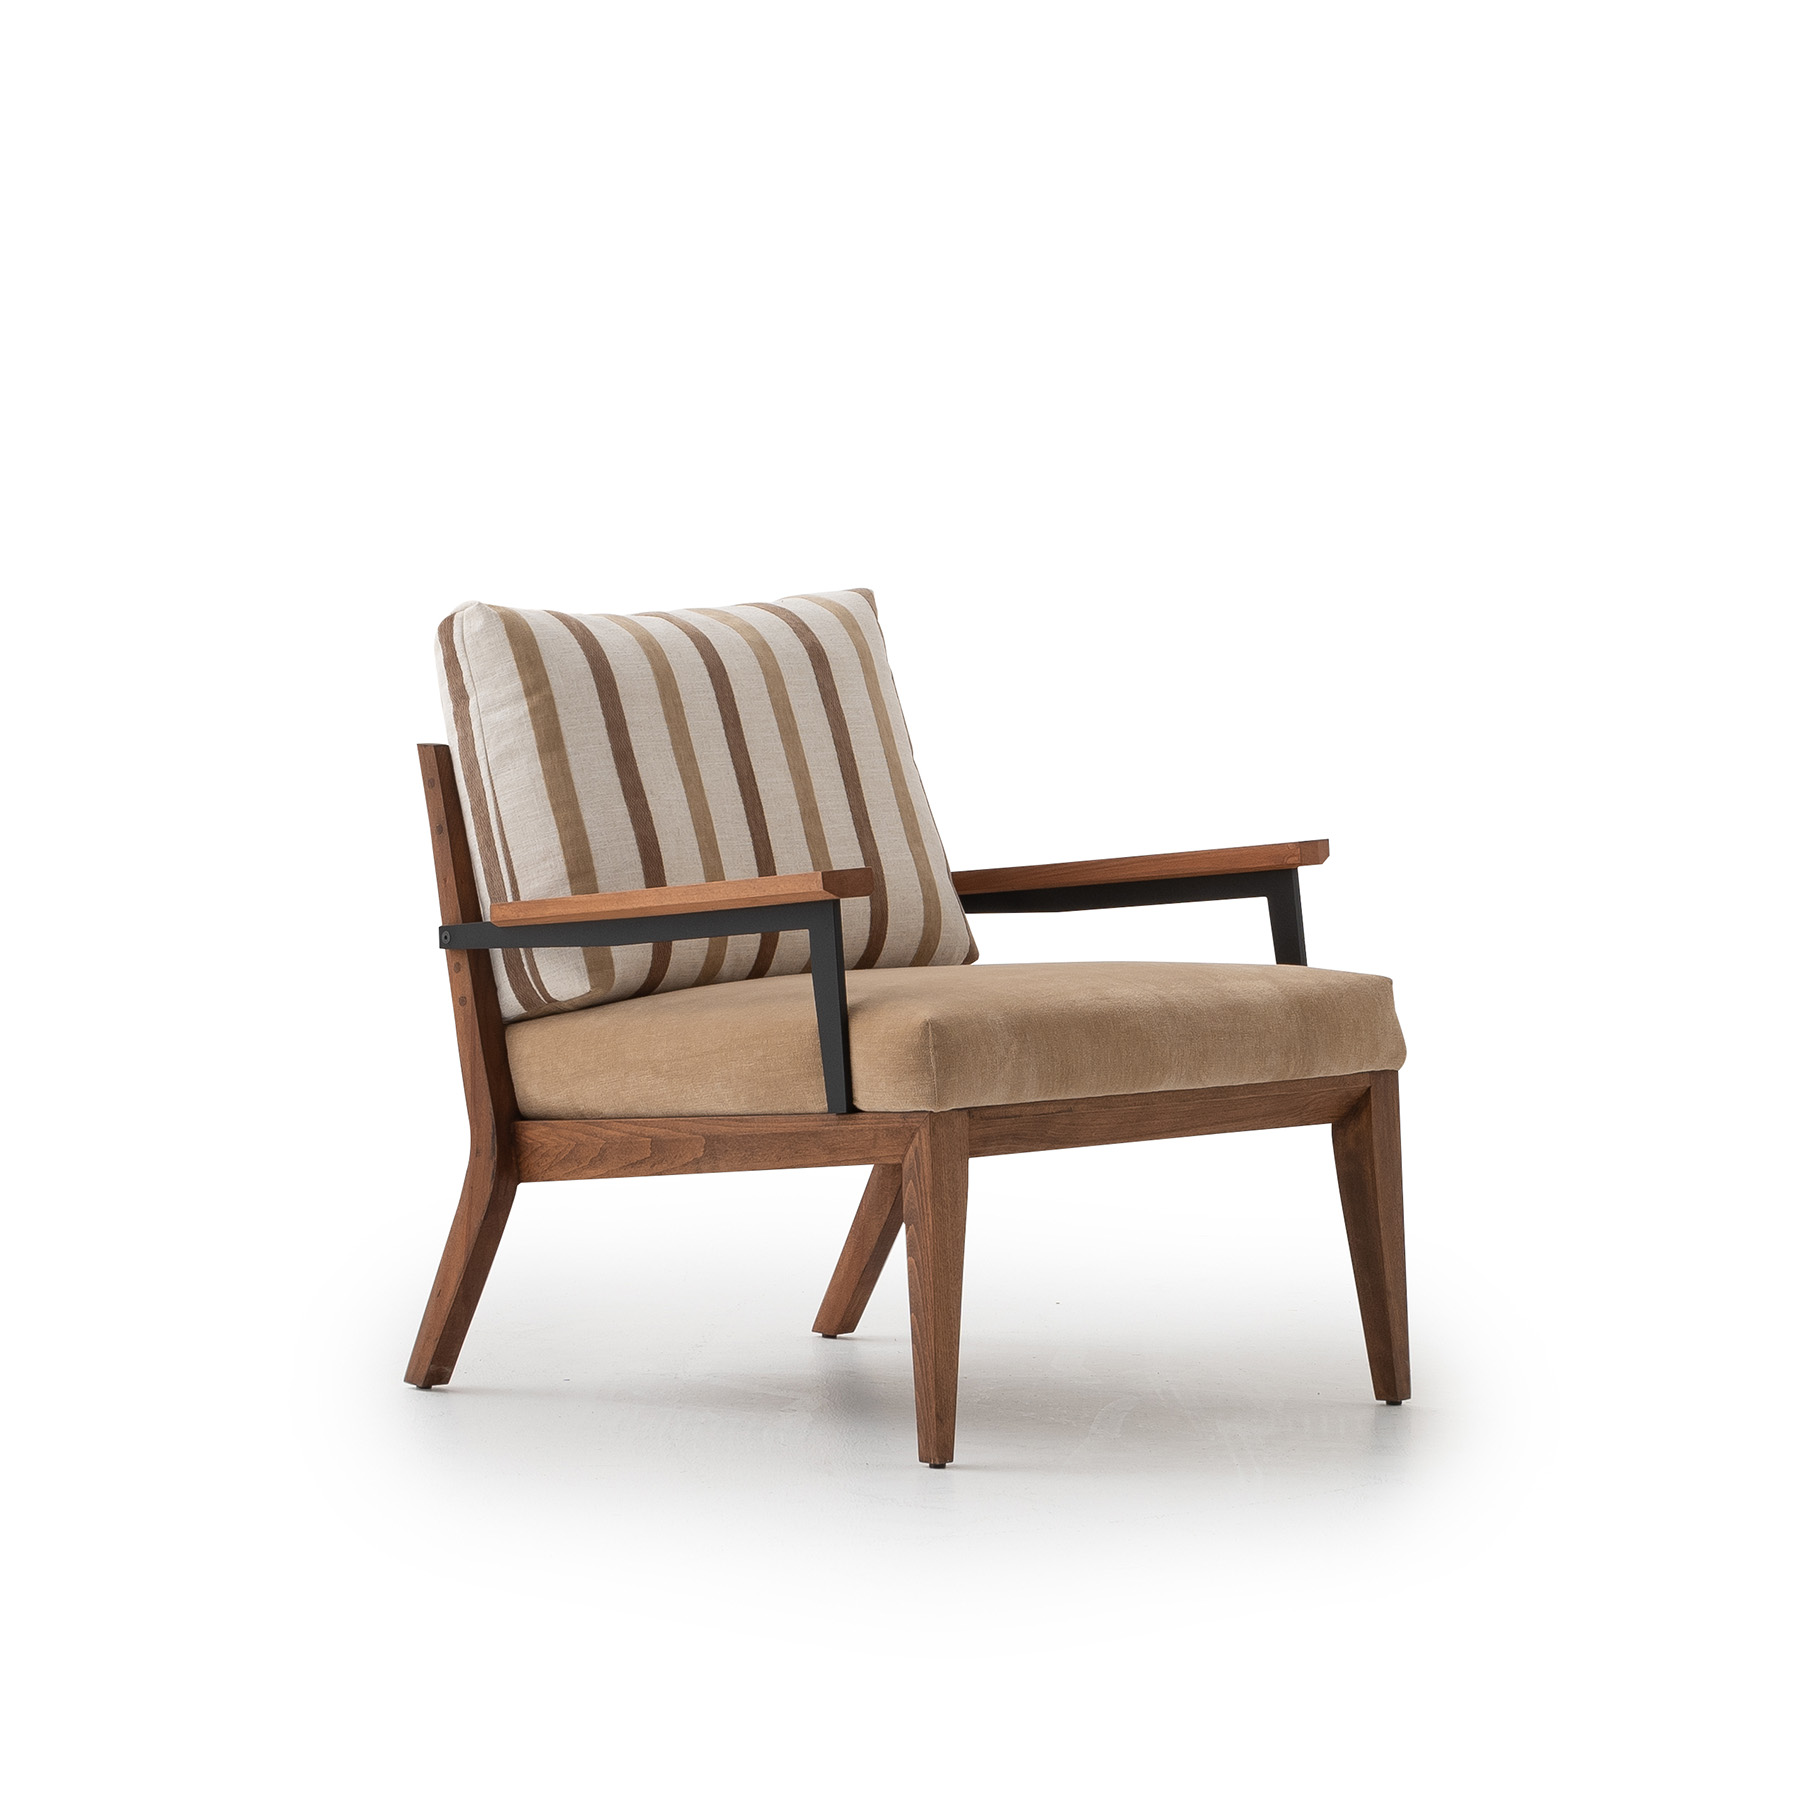 wooden modern bohemian design armchair